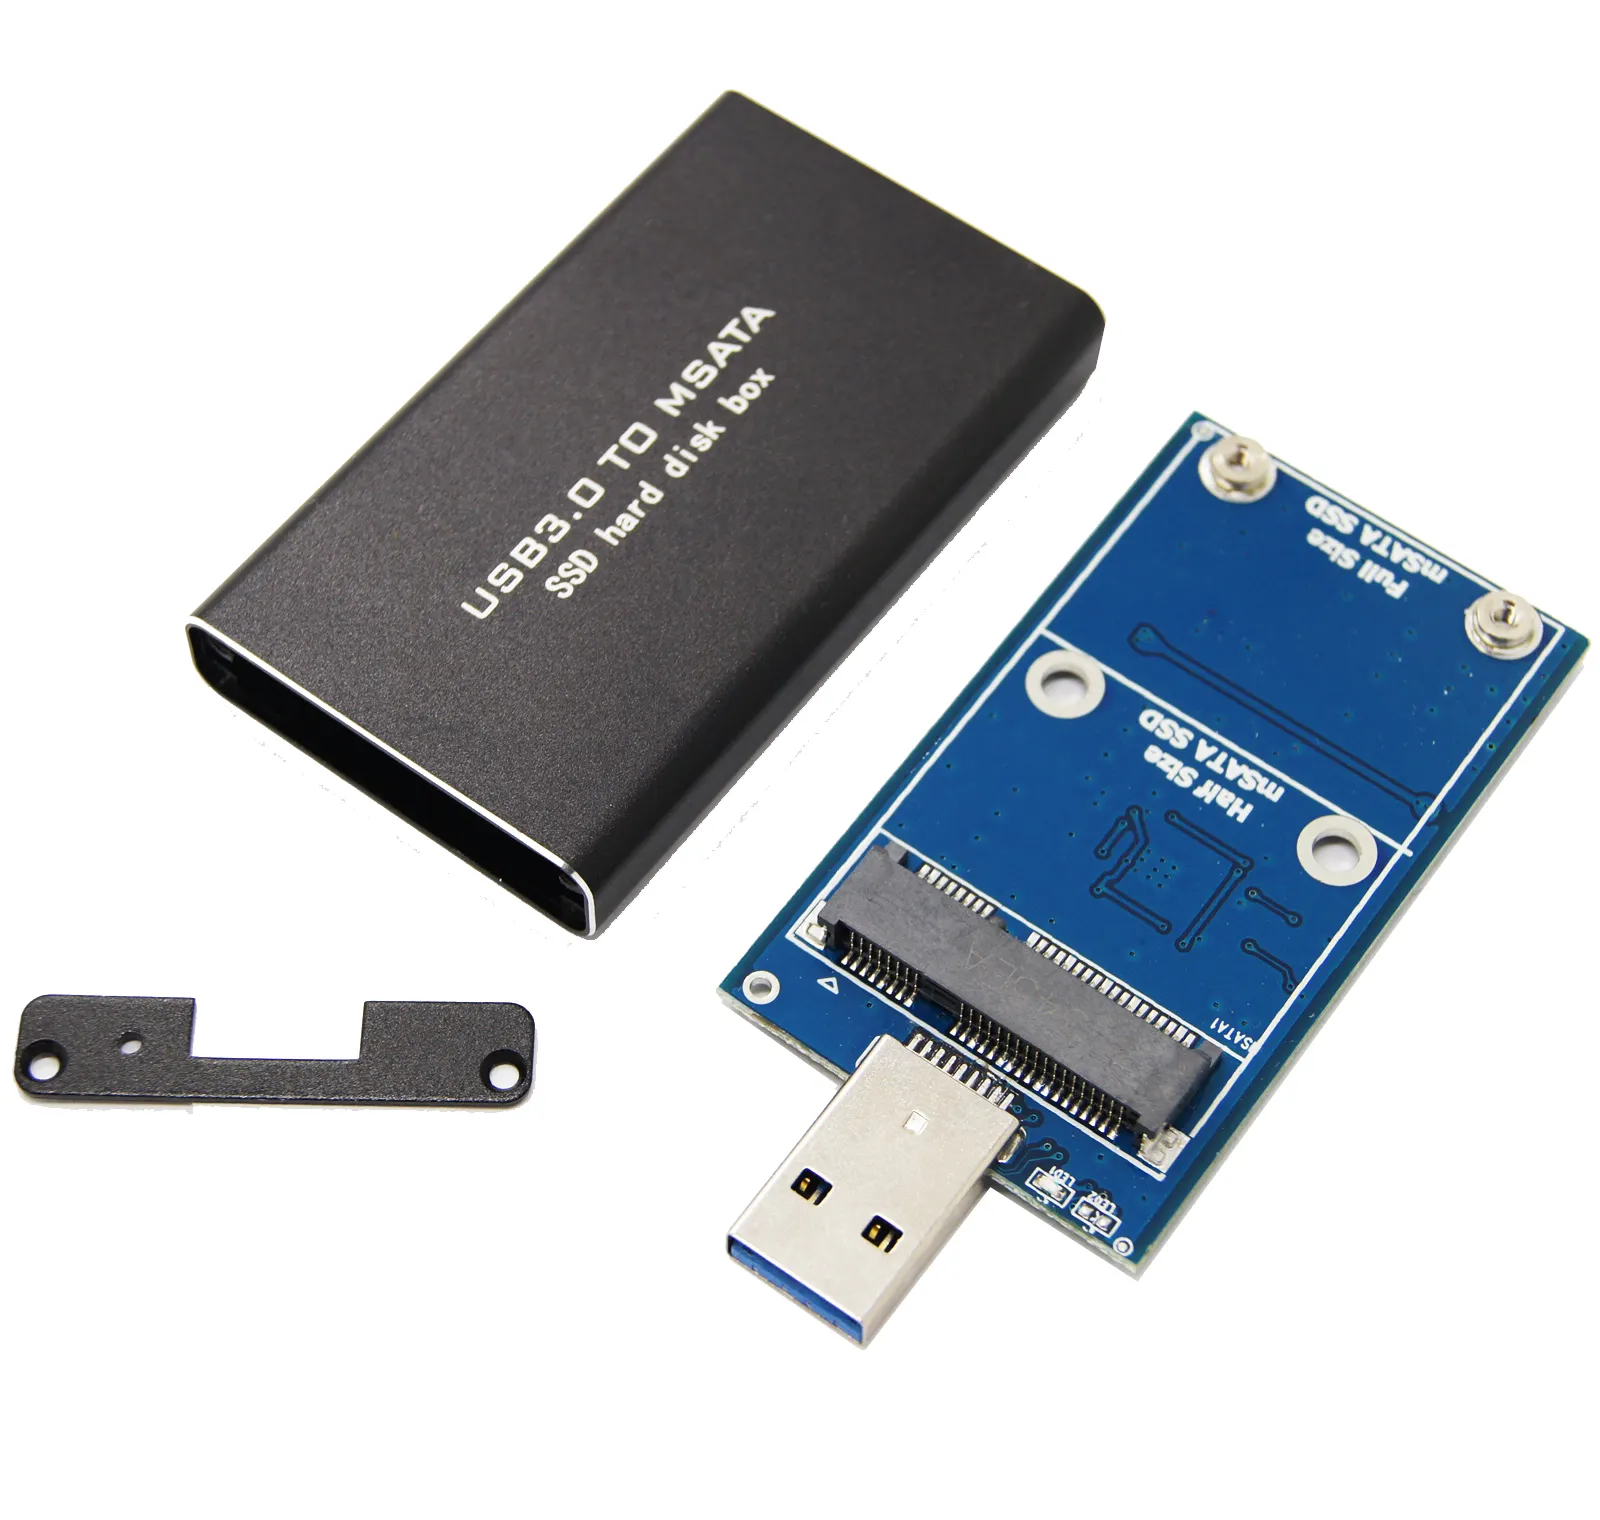 Hot Menjual Aluminium Kasus M SATA Inline USB 3.0 untuk Mini Pcie M SATA HDD Kandang